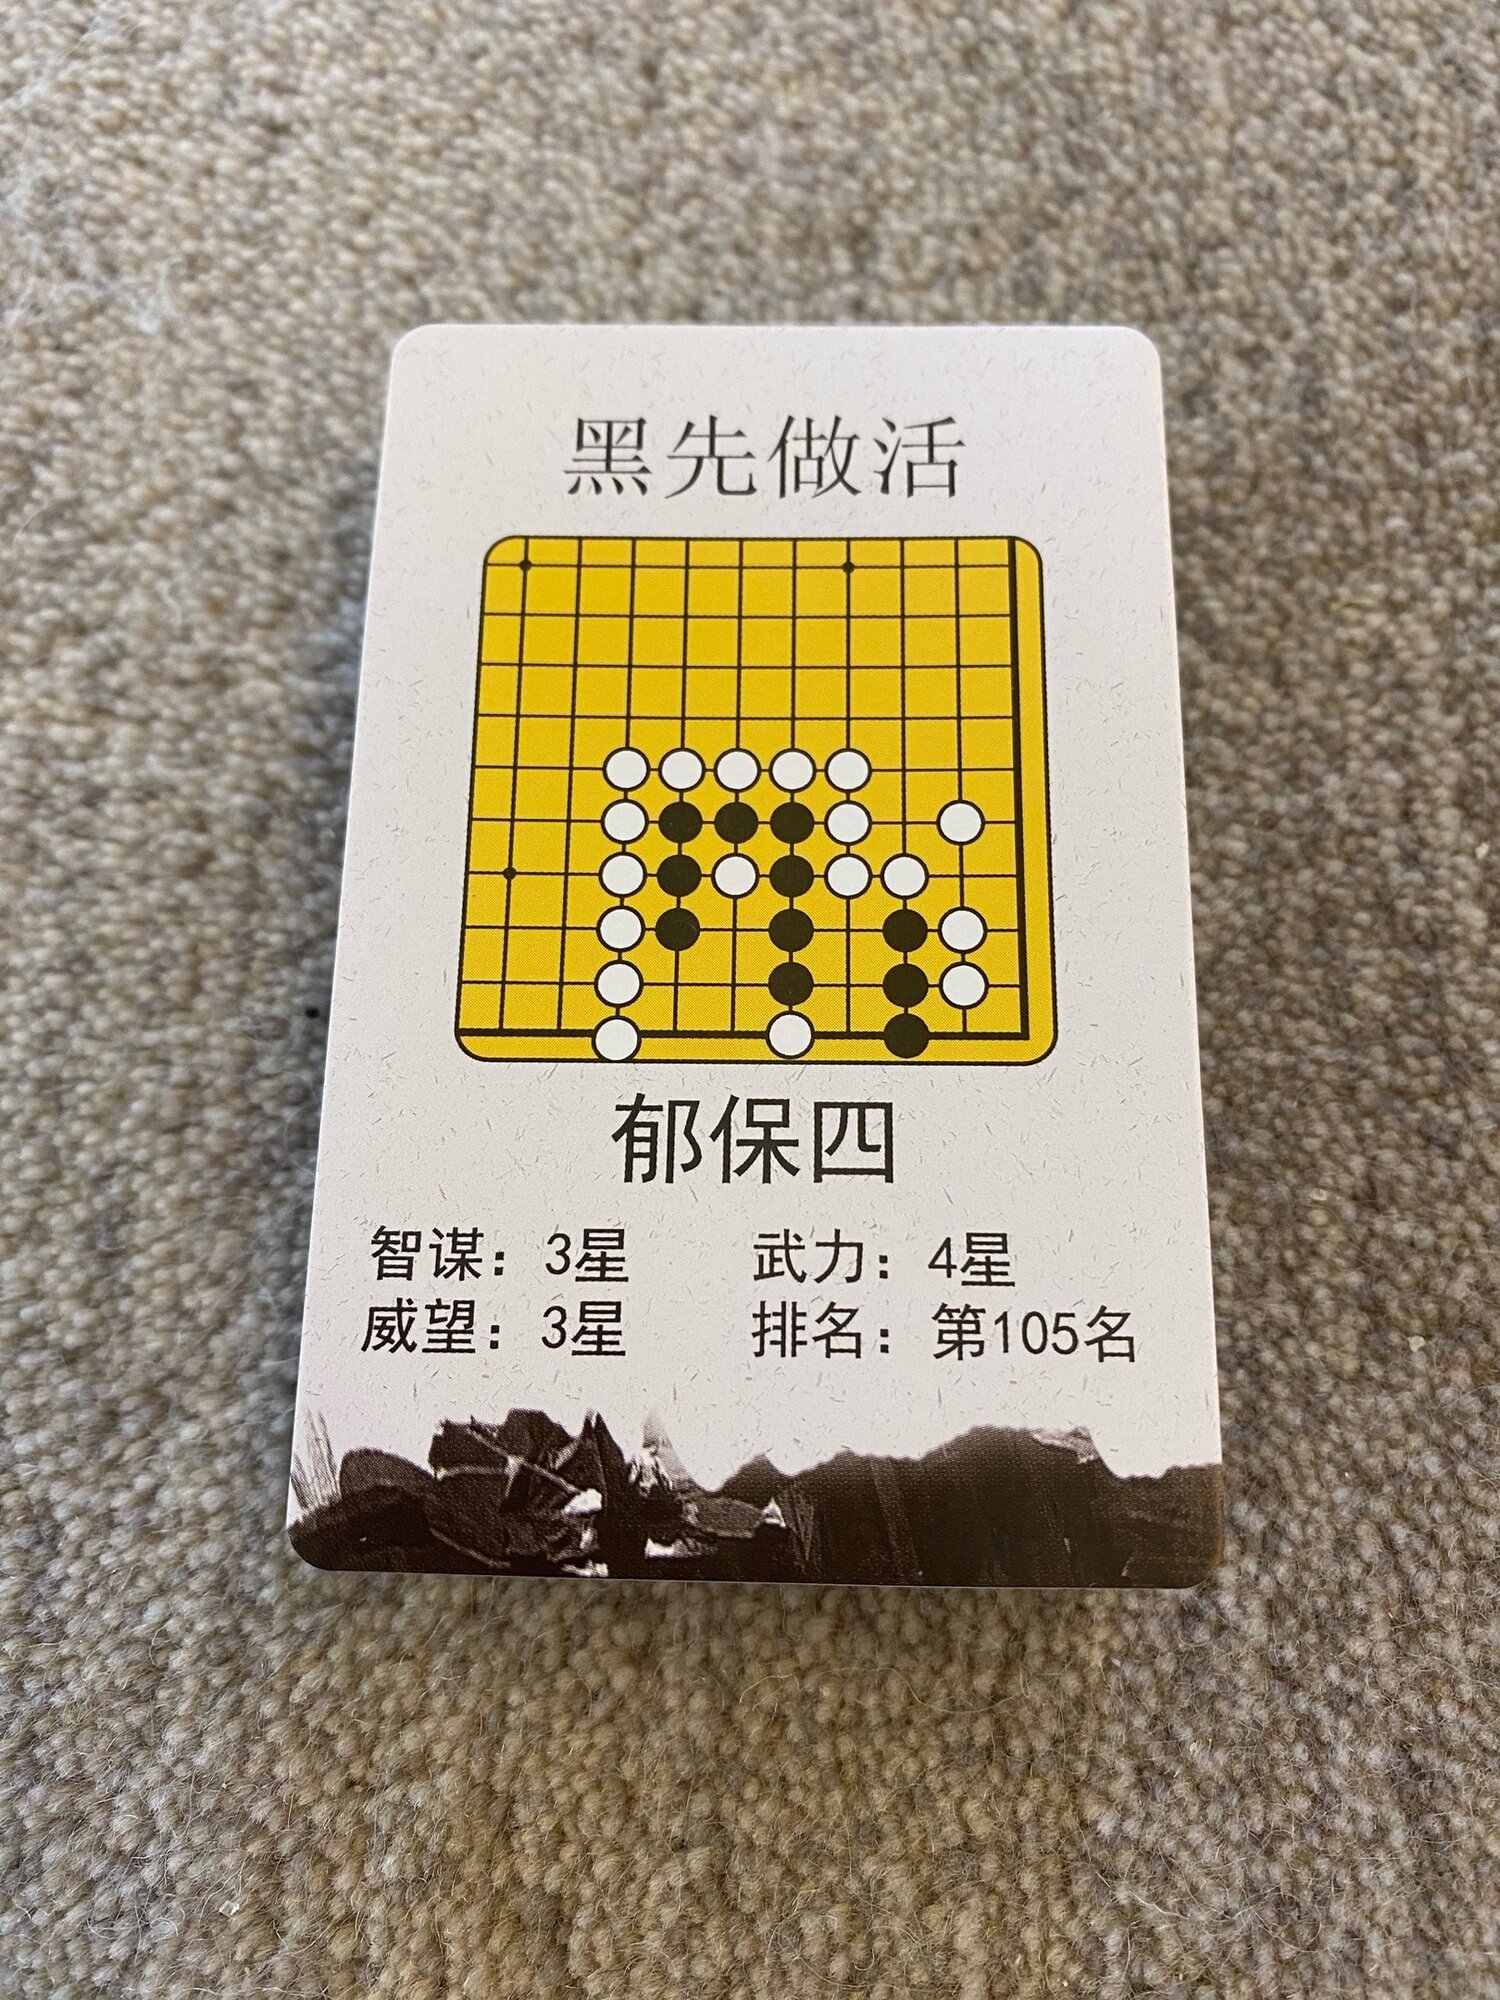 Настольная игра Го, набор №1 " Речные заводи ", го-карты с задачами на выживание, 54 шт.